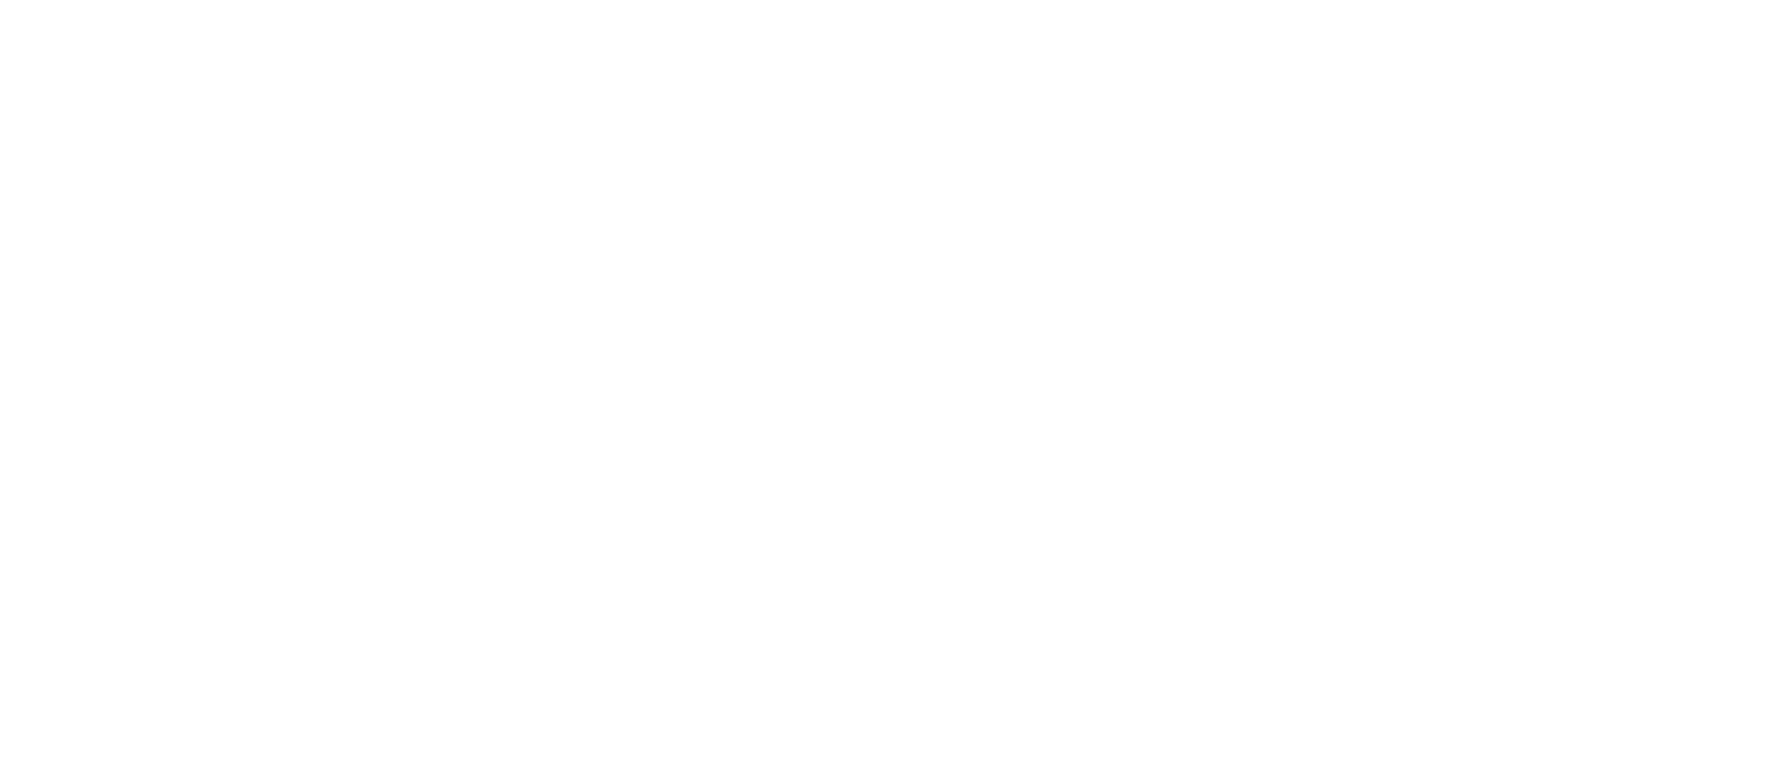 Boling Vision Center logo in white